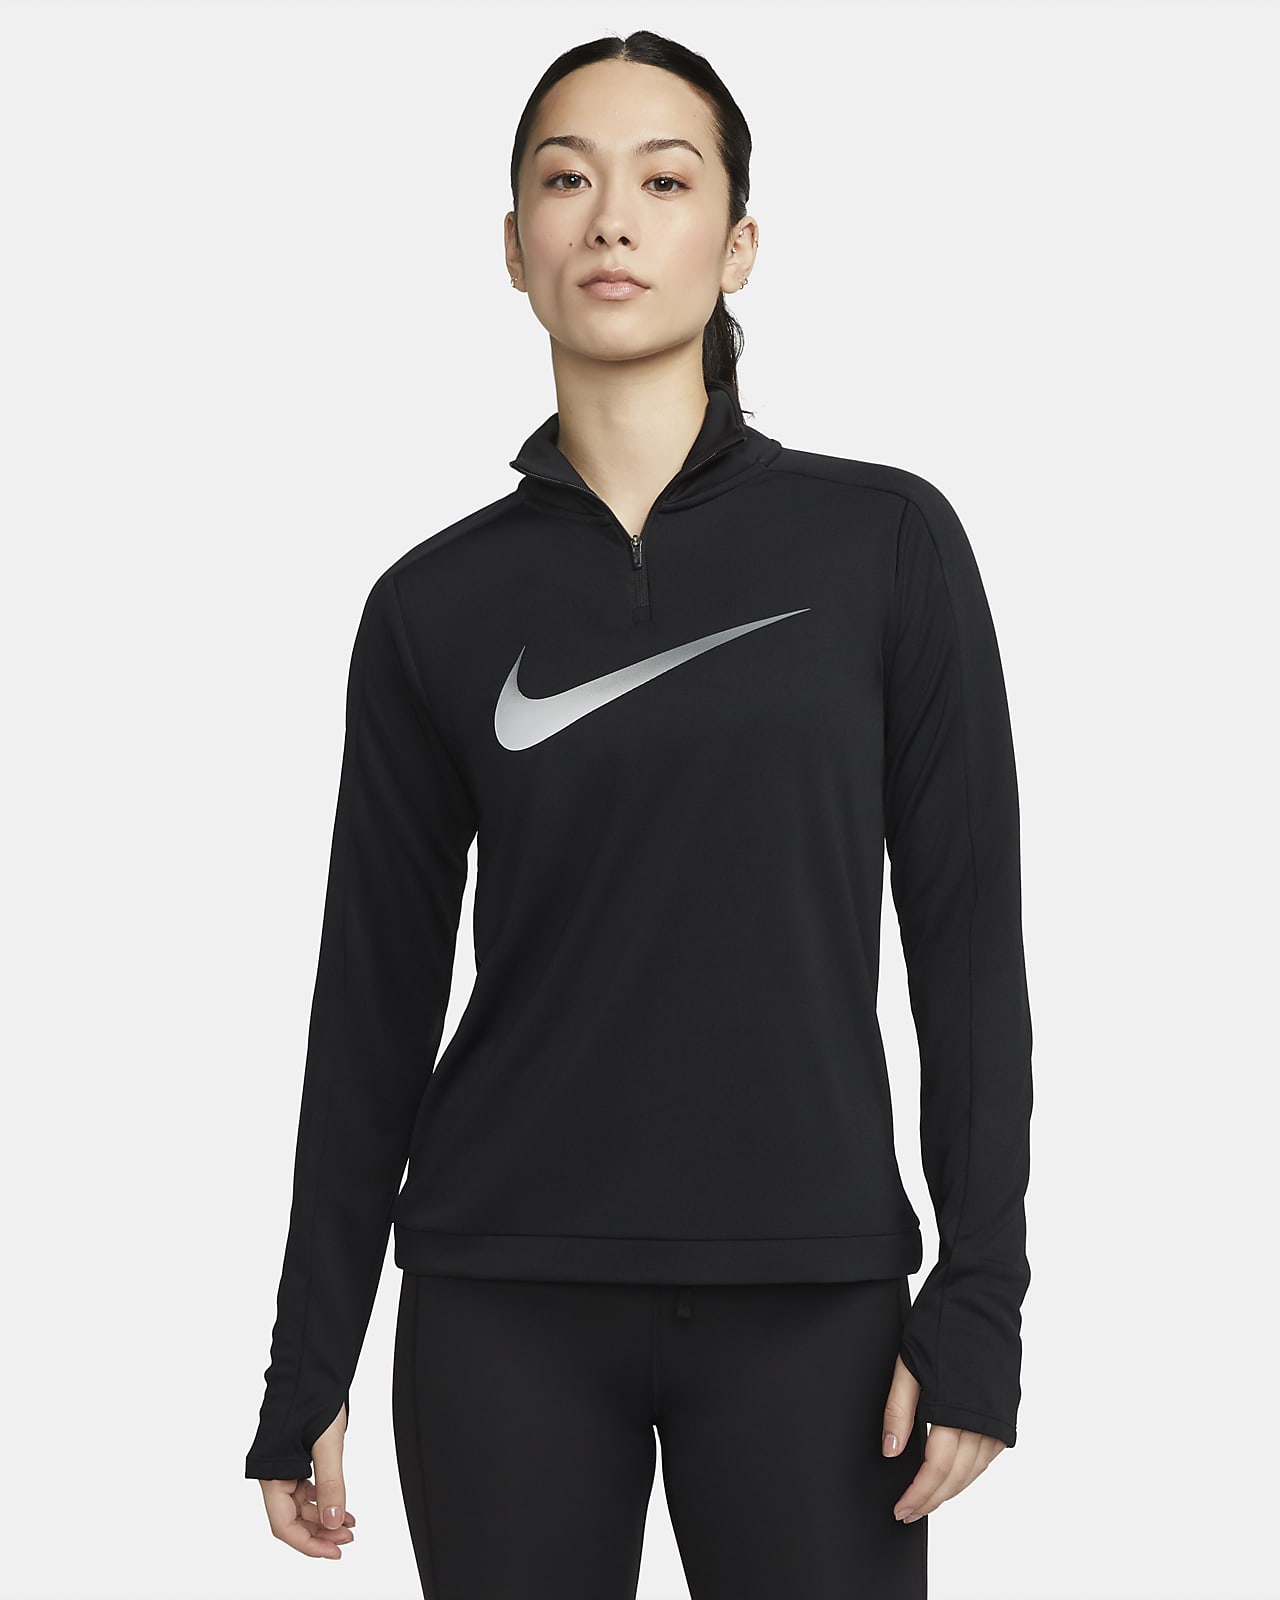 Nike Dri-FIT Swoosh 女款 1/4 拉鍊長袖跑步中層上衣